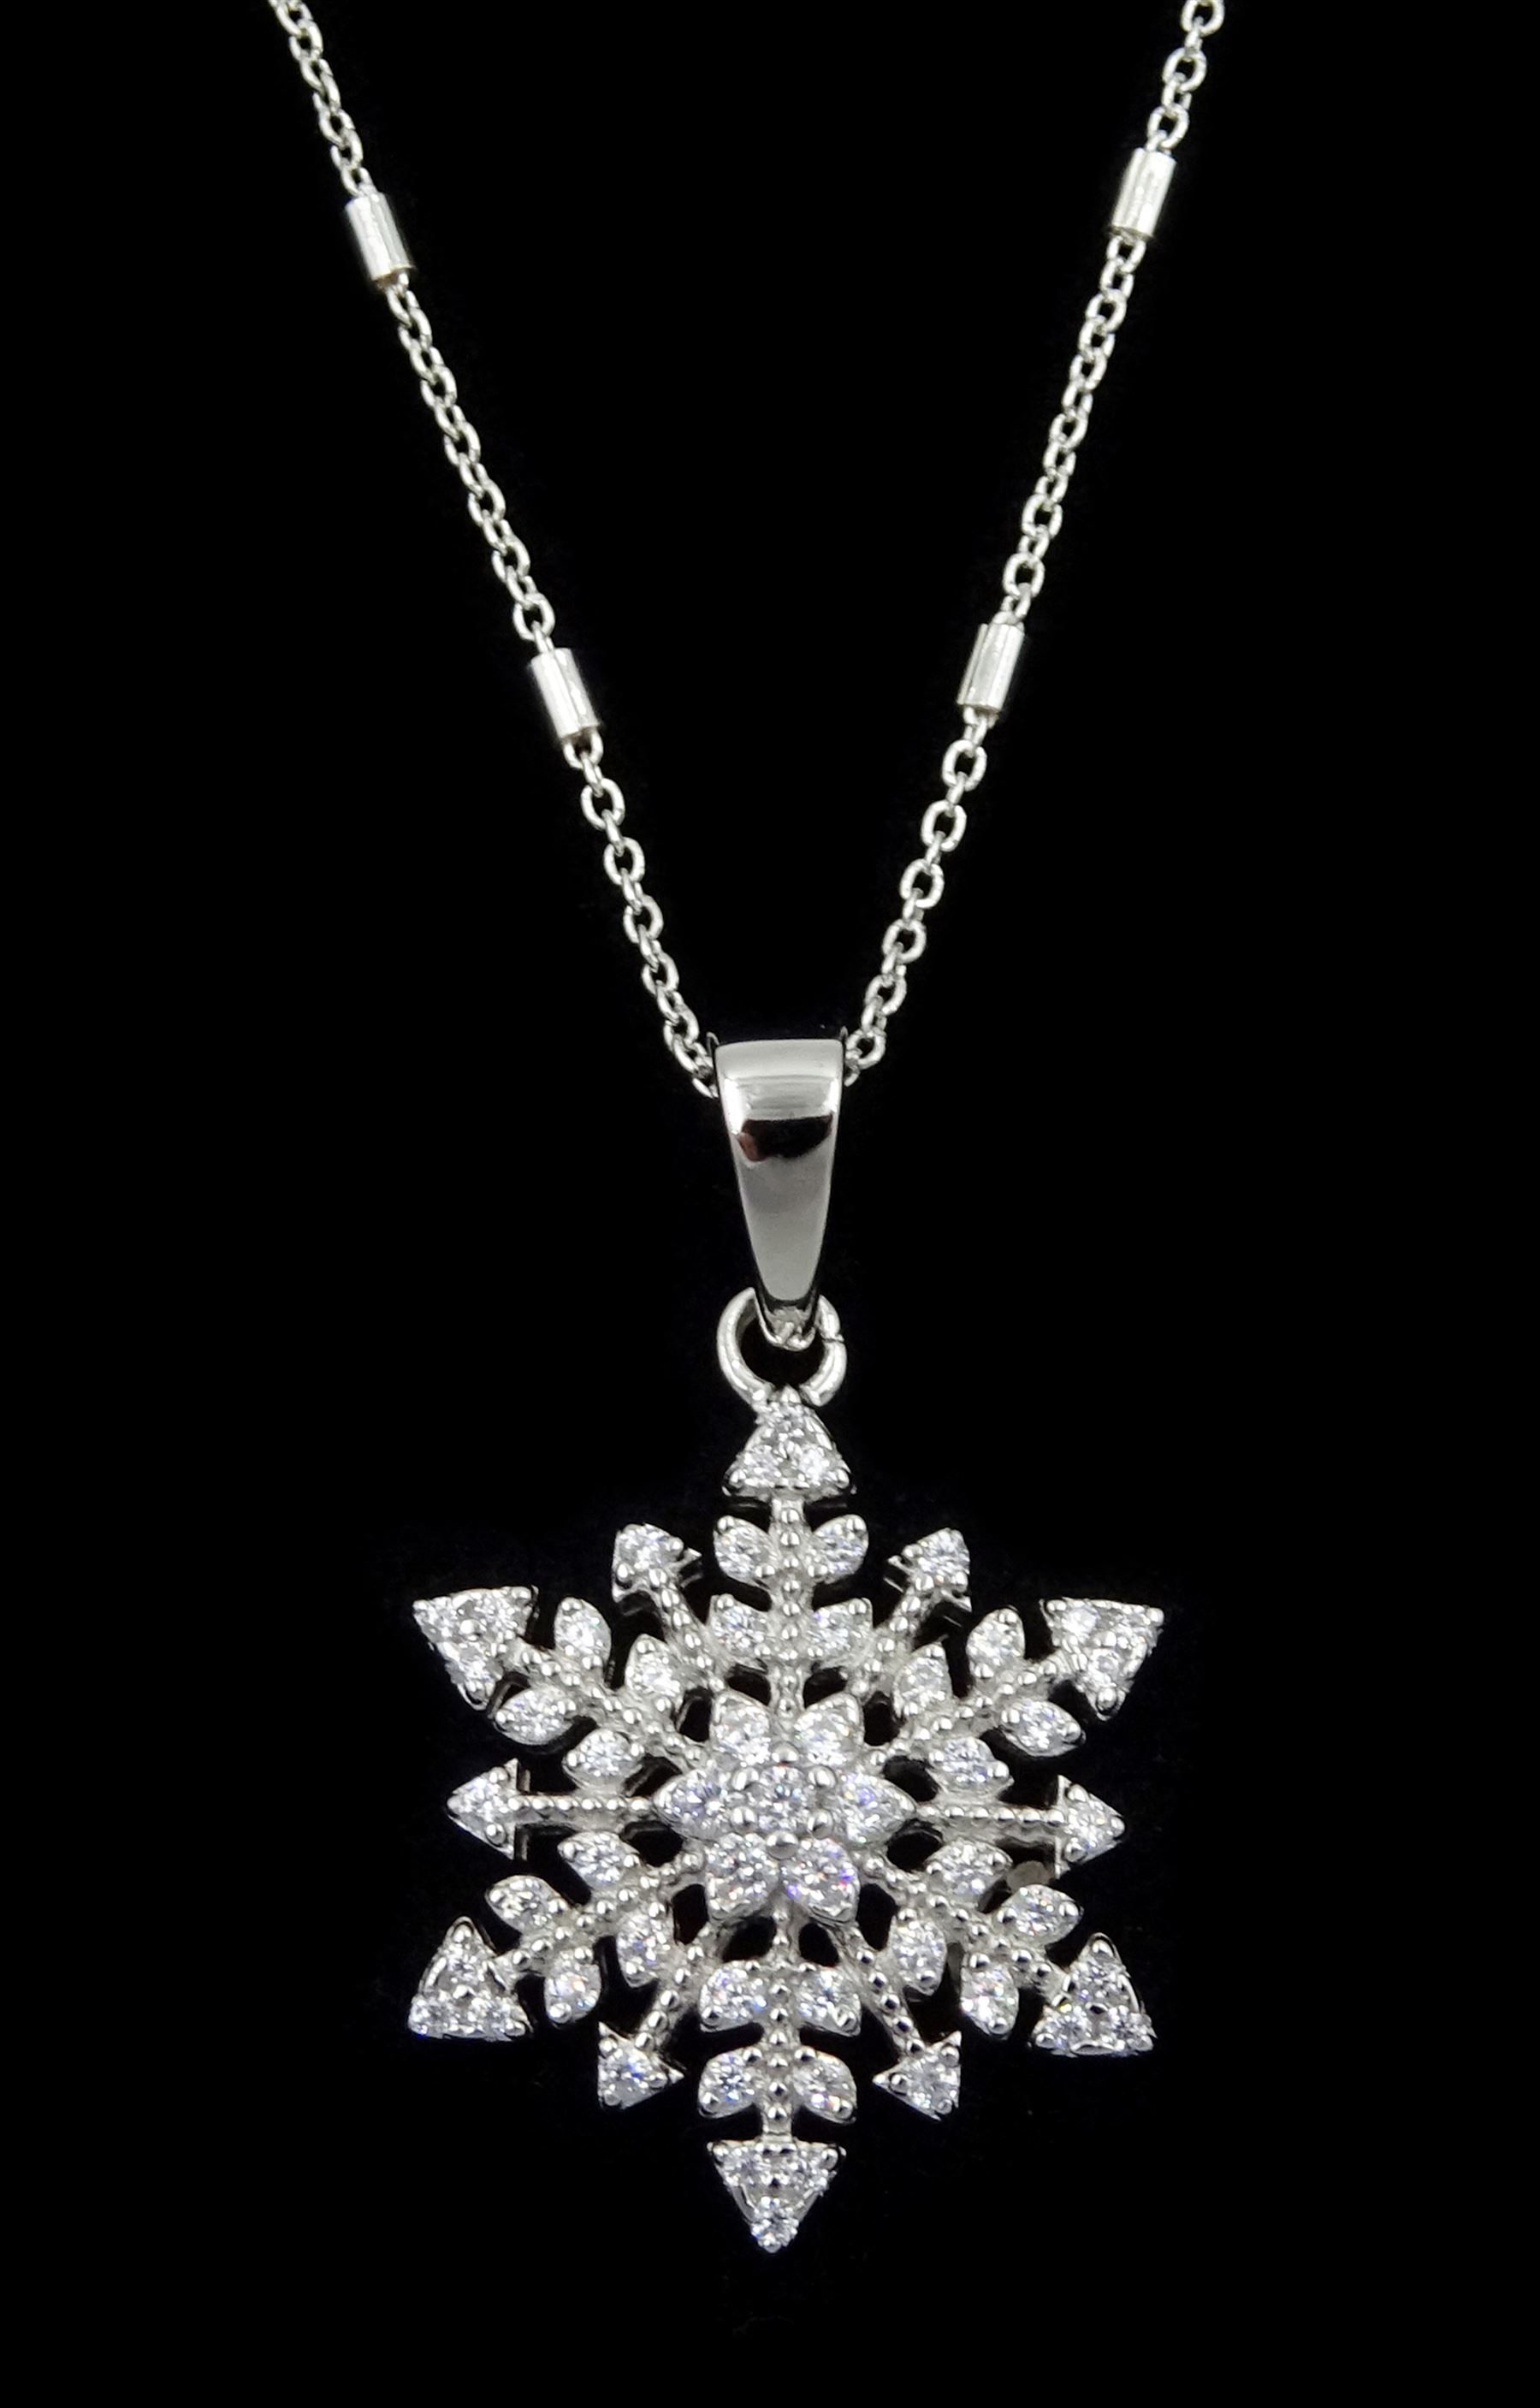 Silver cubic zirconia snowflake pendant necklace